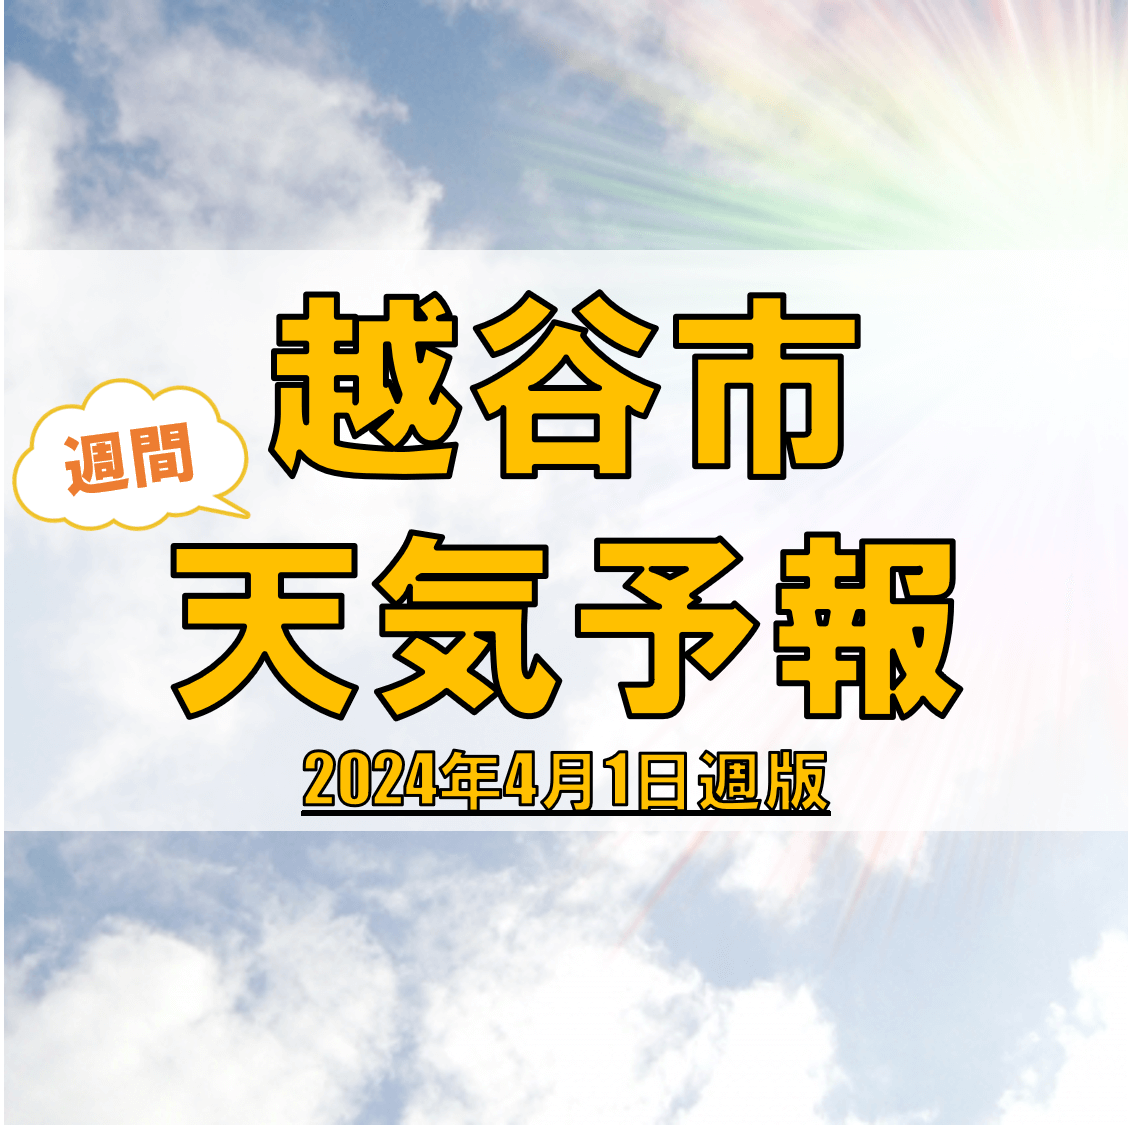 越谷市の天気 週間予報【2024年4月1日週】